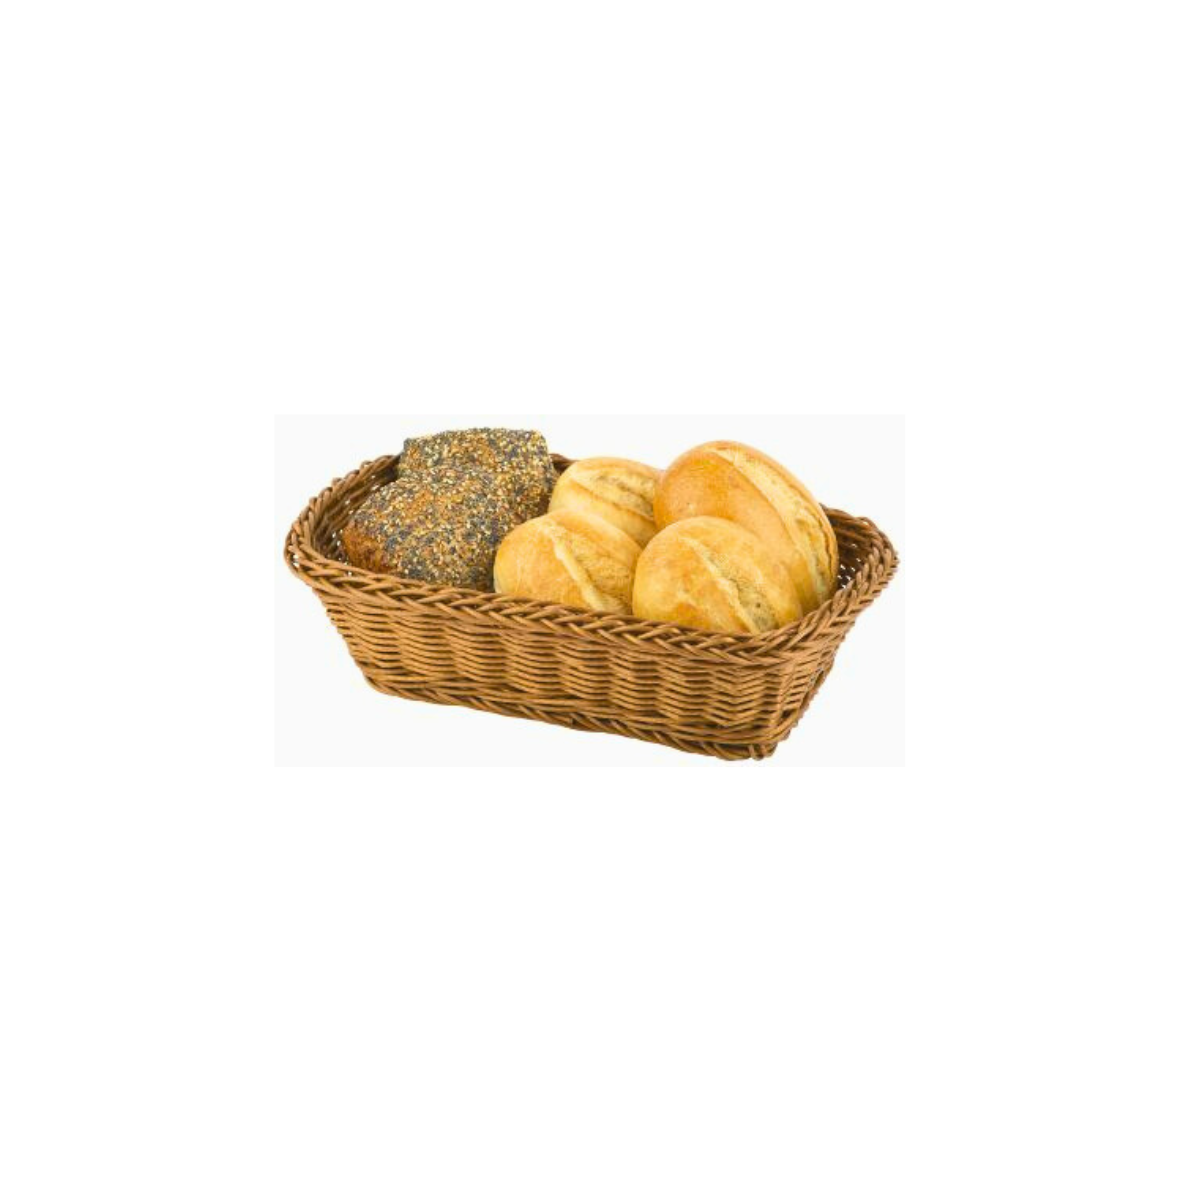 Brot- und Obstkorb rechteckig, braun, Poly-Rattan, in zwei Größen